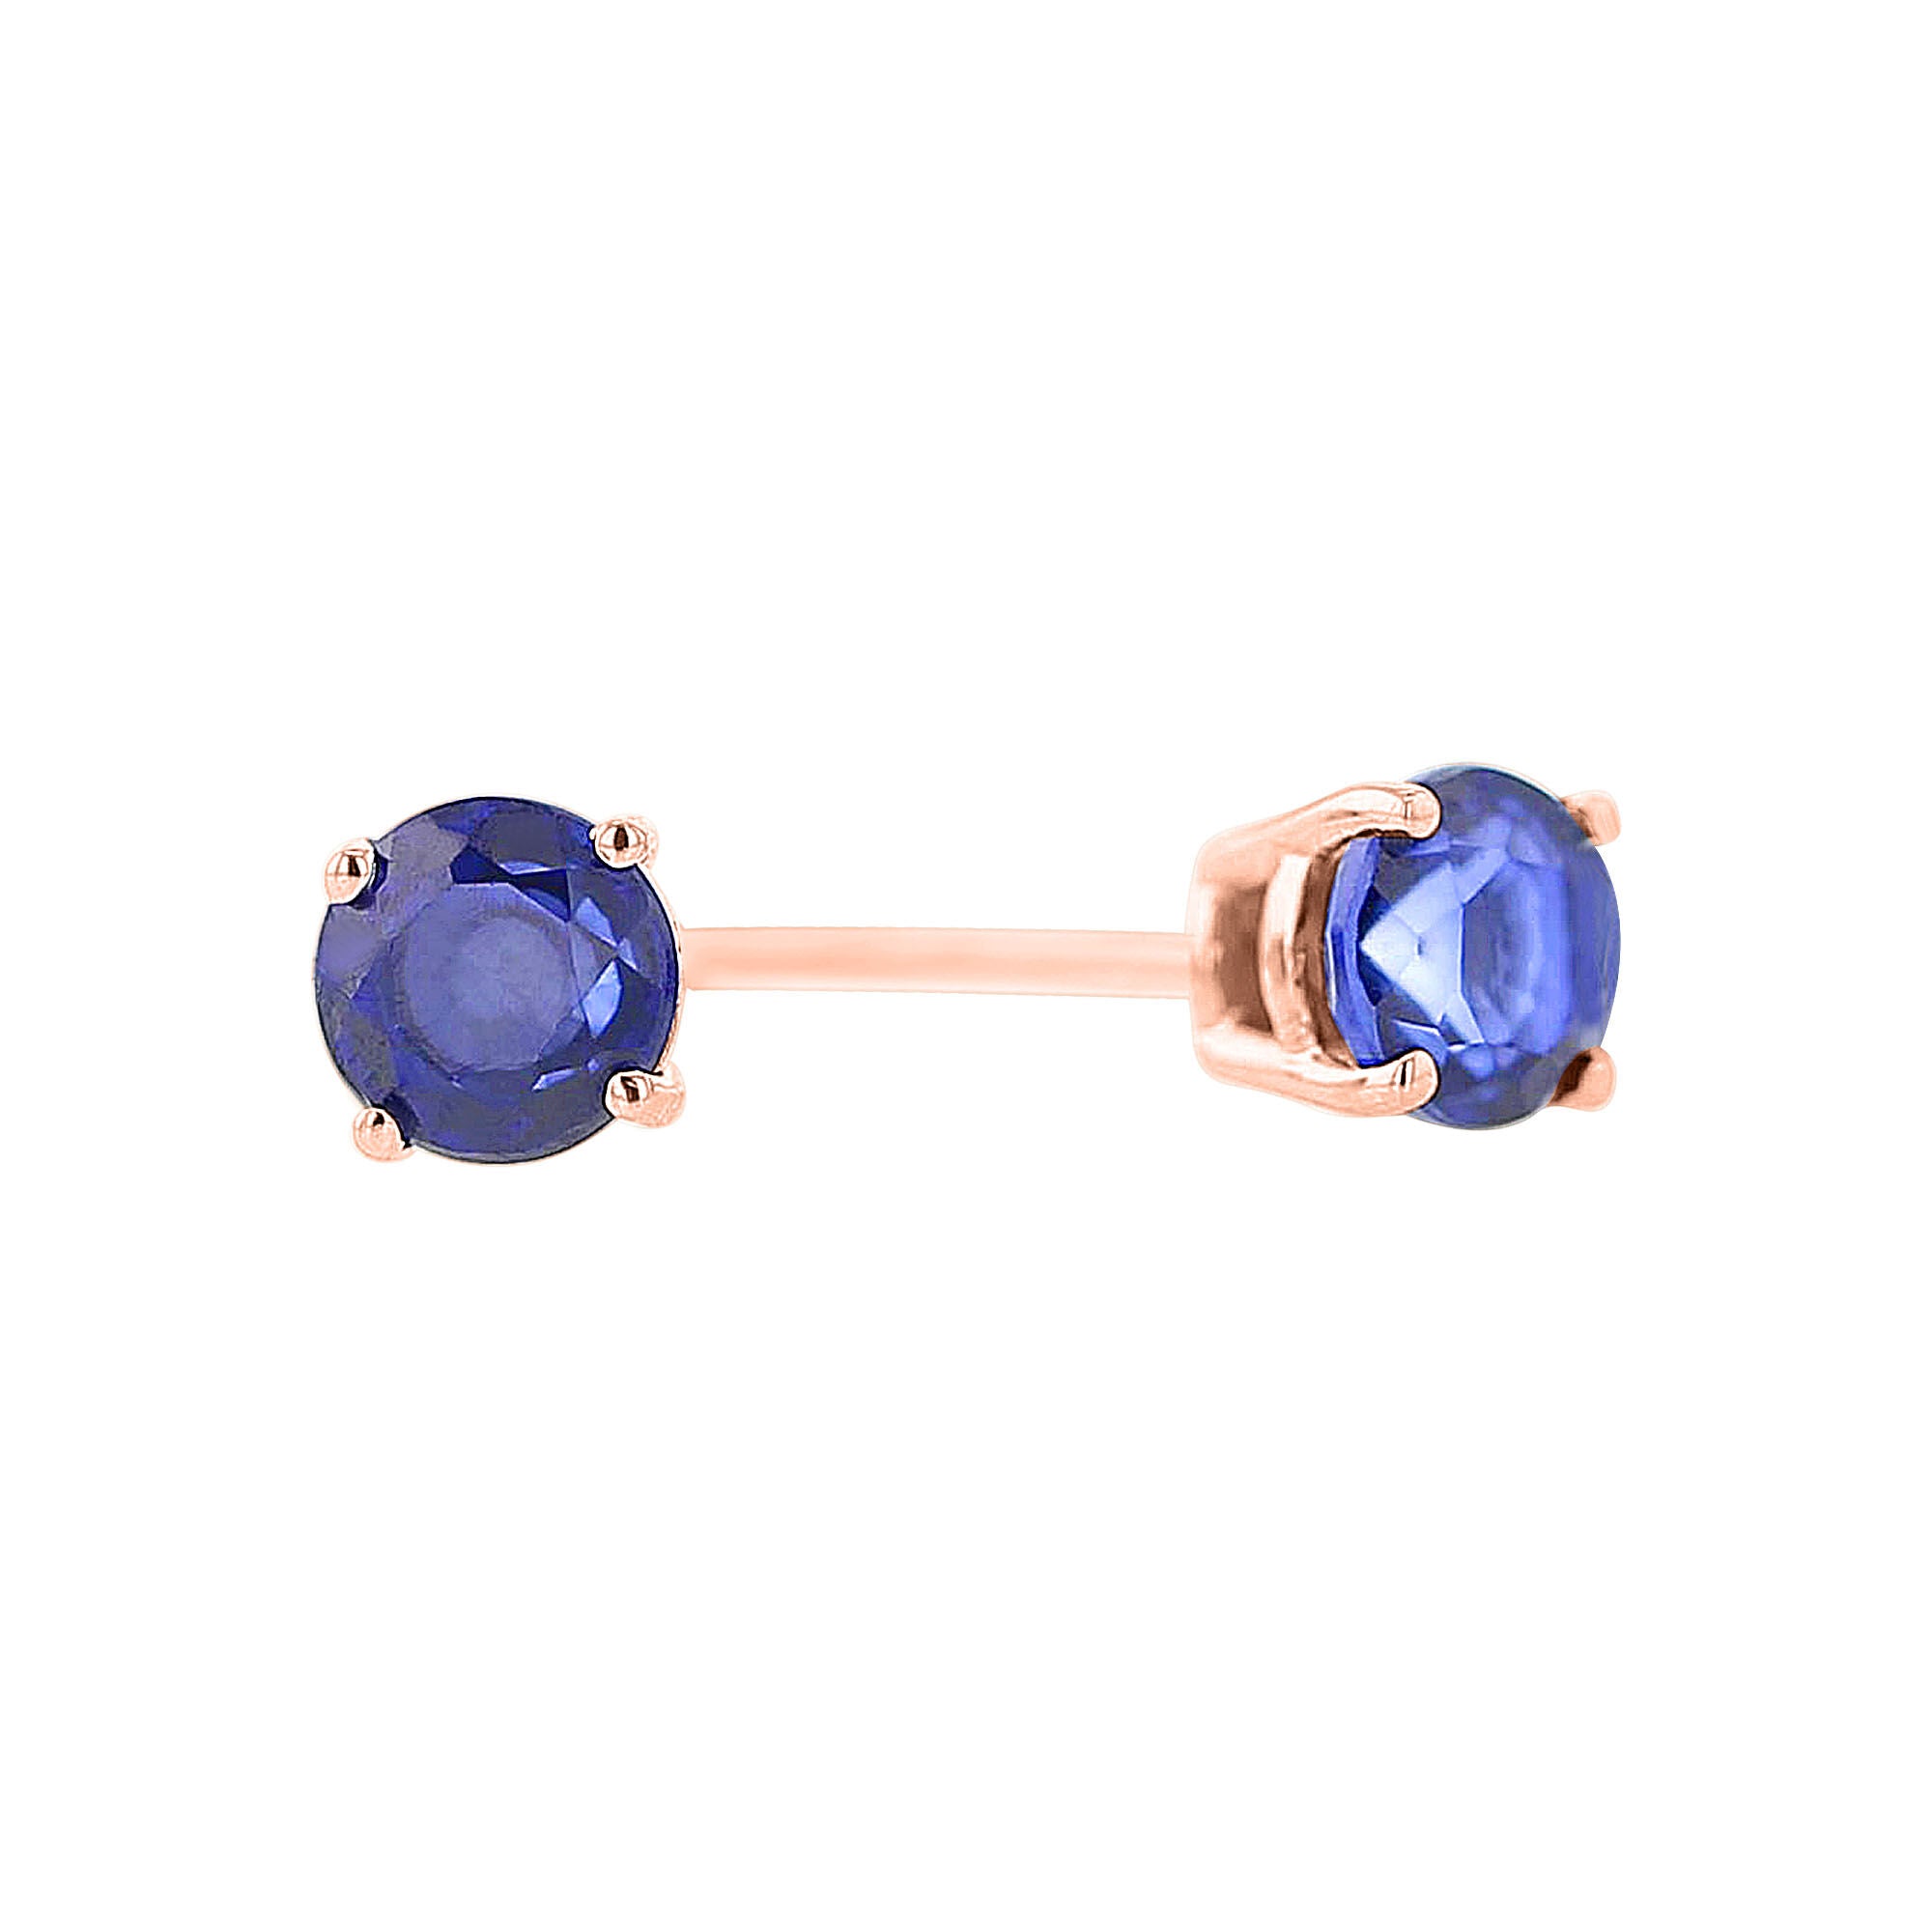 Majestic Blue Sapphire Stud Earrings 5/8ct